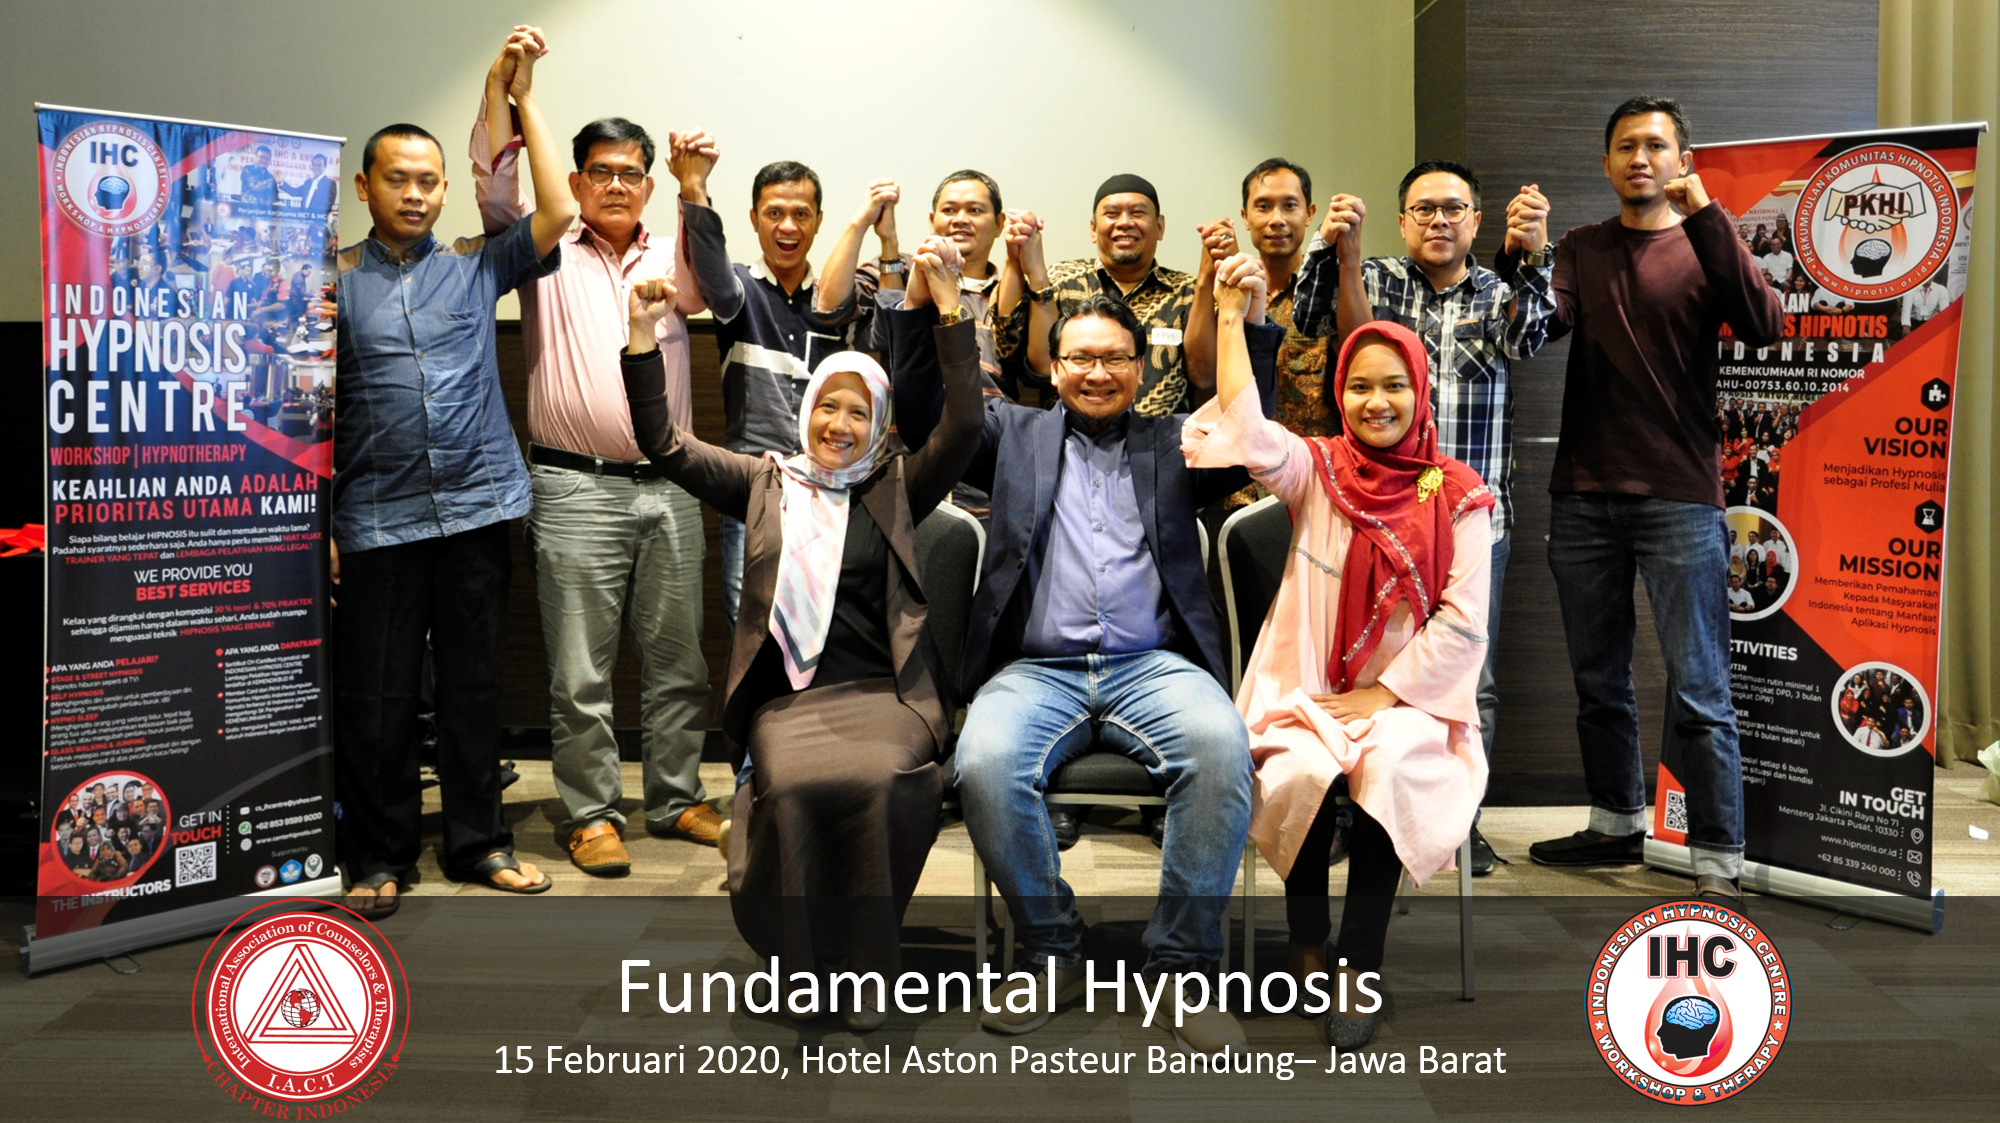 Andri Hakim2 - Fundamental Hypnosis - Februari 15, Bandung 2020